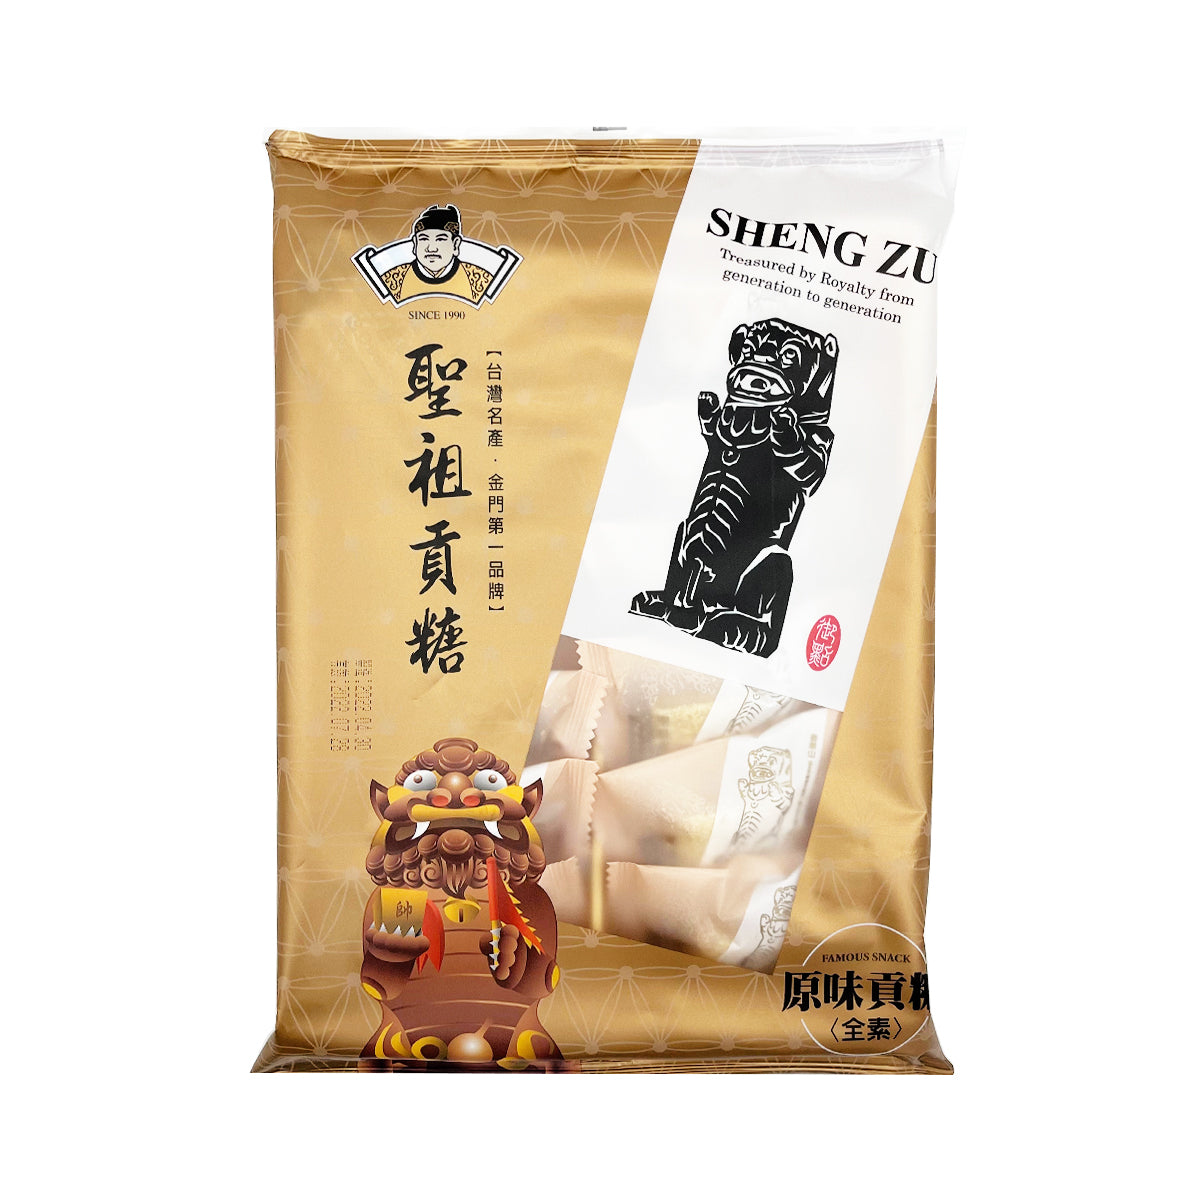 【SHENG ZU】 Kinmen Tribute Candy (Original Flavor)(Vegetarian) 240g